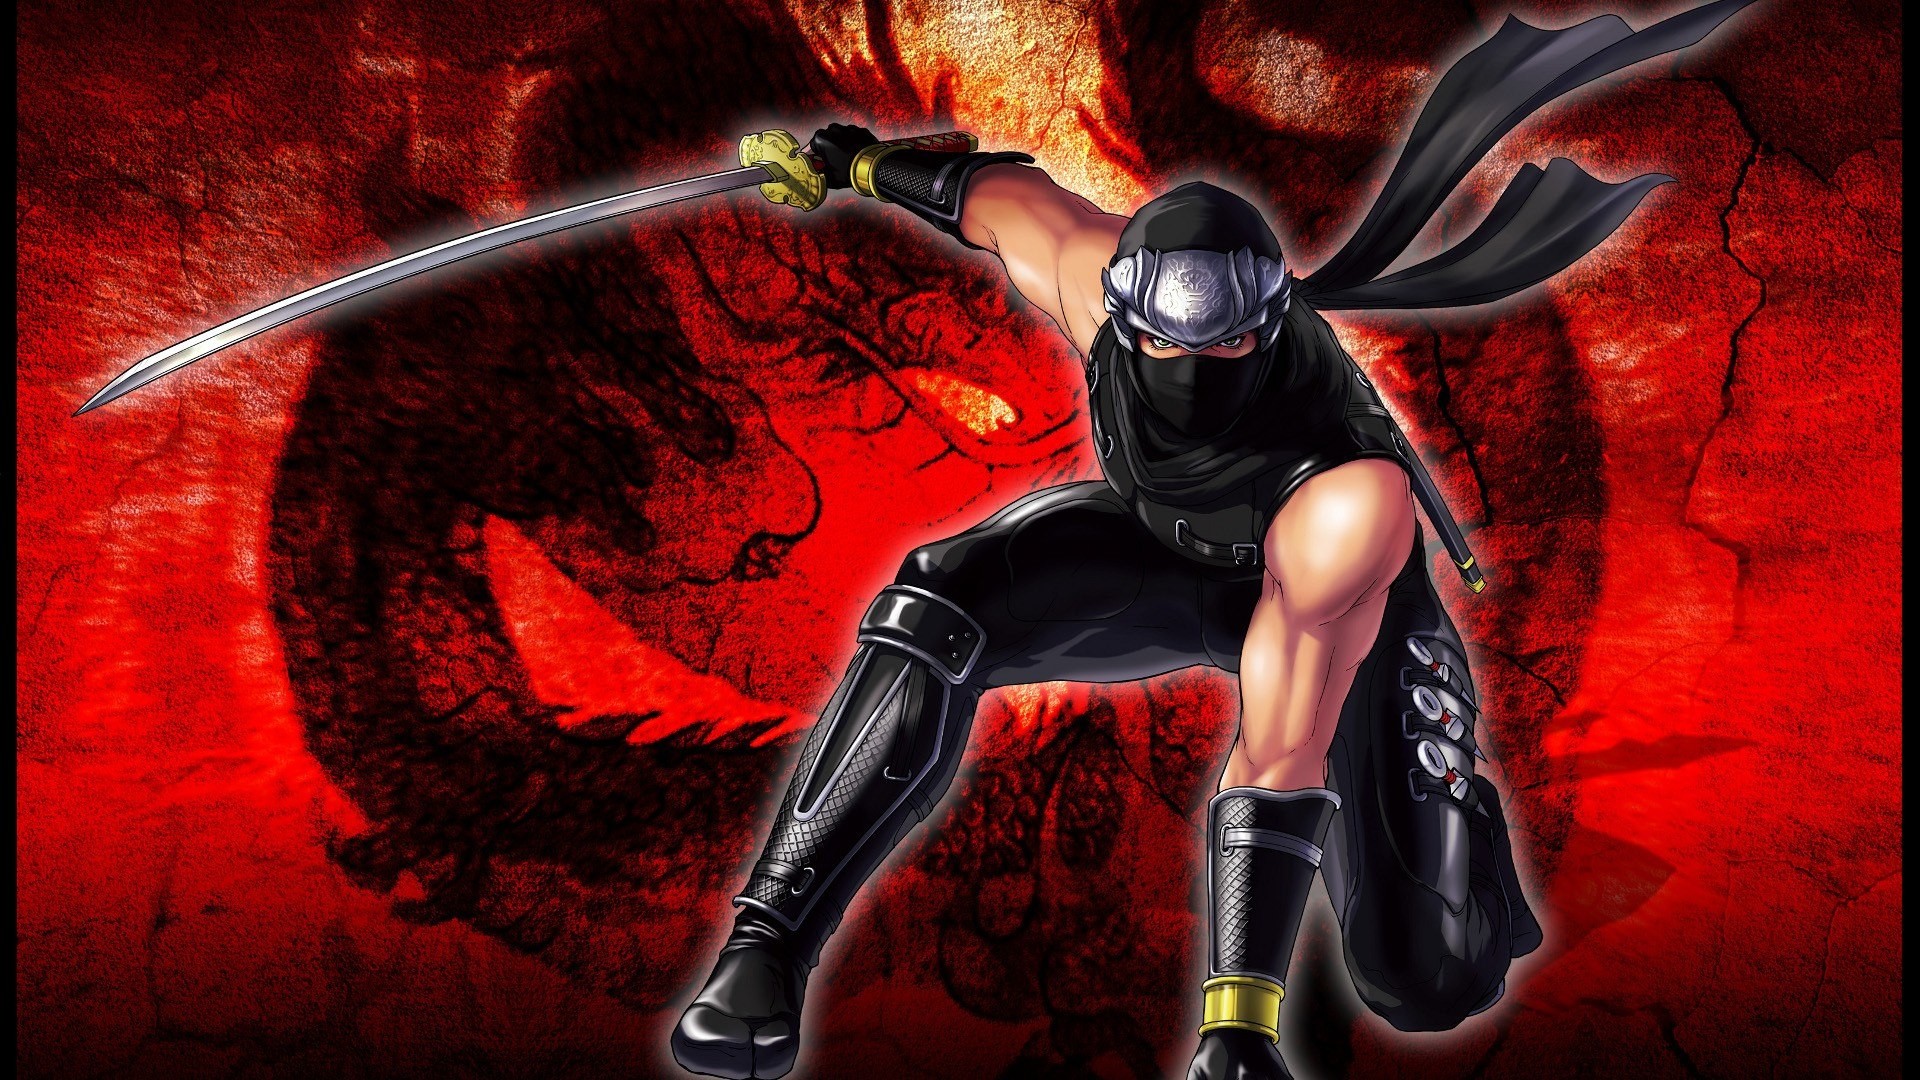 fond d'écran ninja gaiden,jeu d'aventure d'action,démon,oeuvre de cg,personnage fictif,illustration